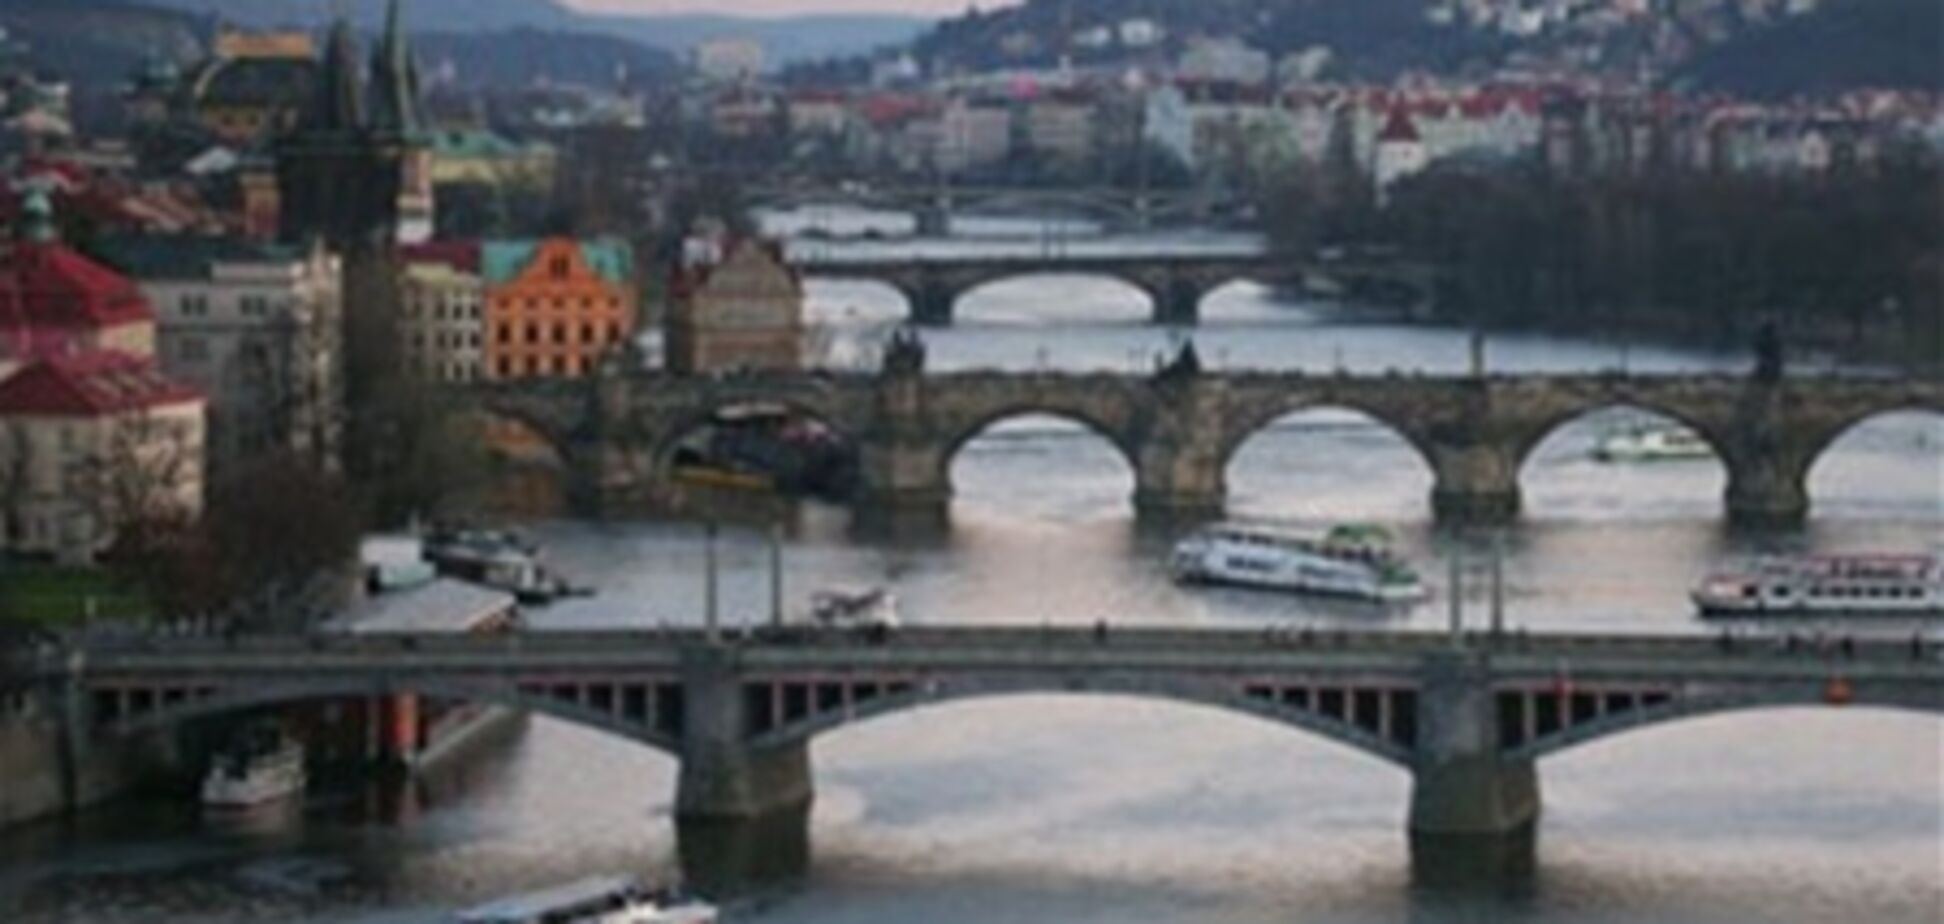 Плавучая галерея откроется в Праге